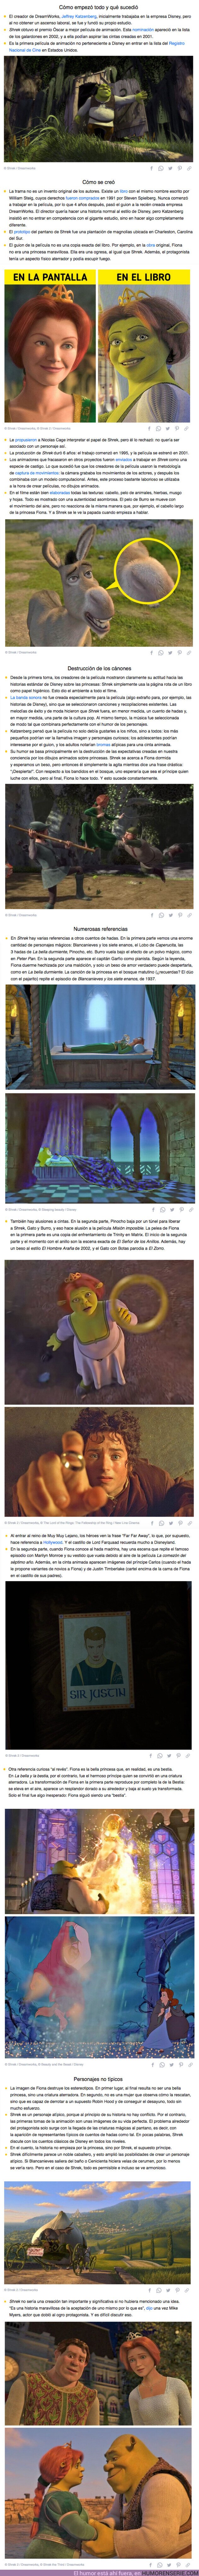 69371 - GALERÍA: 20+ Hechos sobre “Shrek”, la serie de películas que se atrevió a destruir las reglas establecidas de la animación